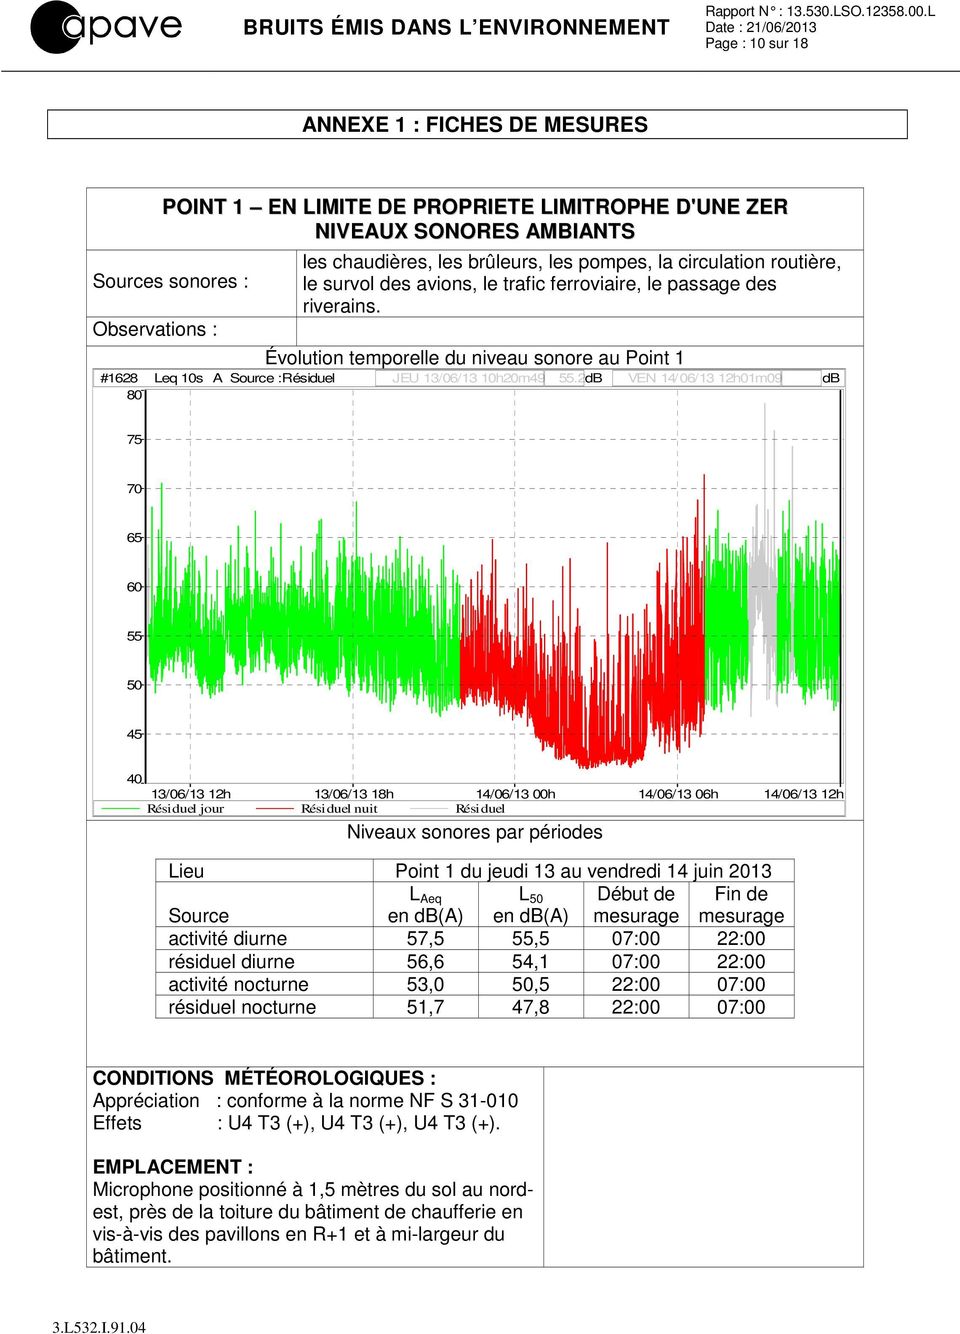 Évolution temporelle du niveau sonore au Point 1 #1628 Leq 10s A Source :Résiduel JEU 13/06/13 10h20m49 55.